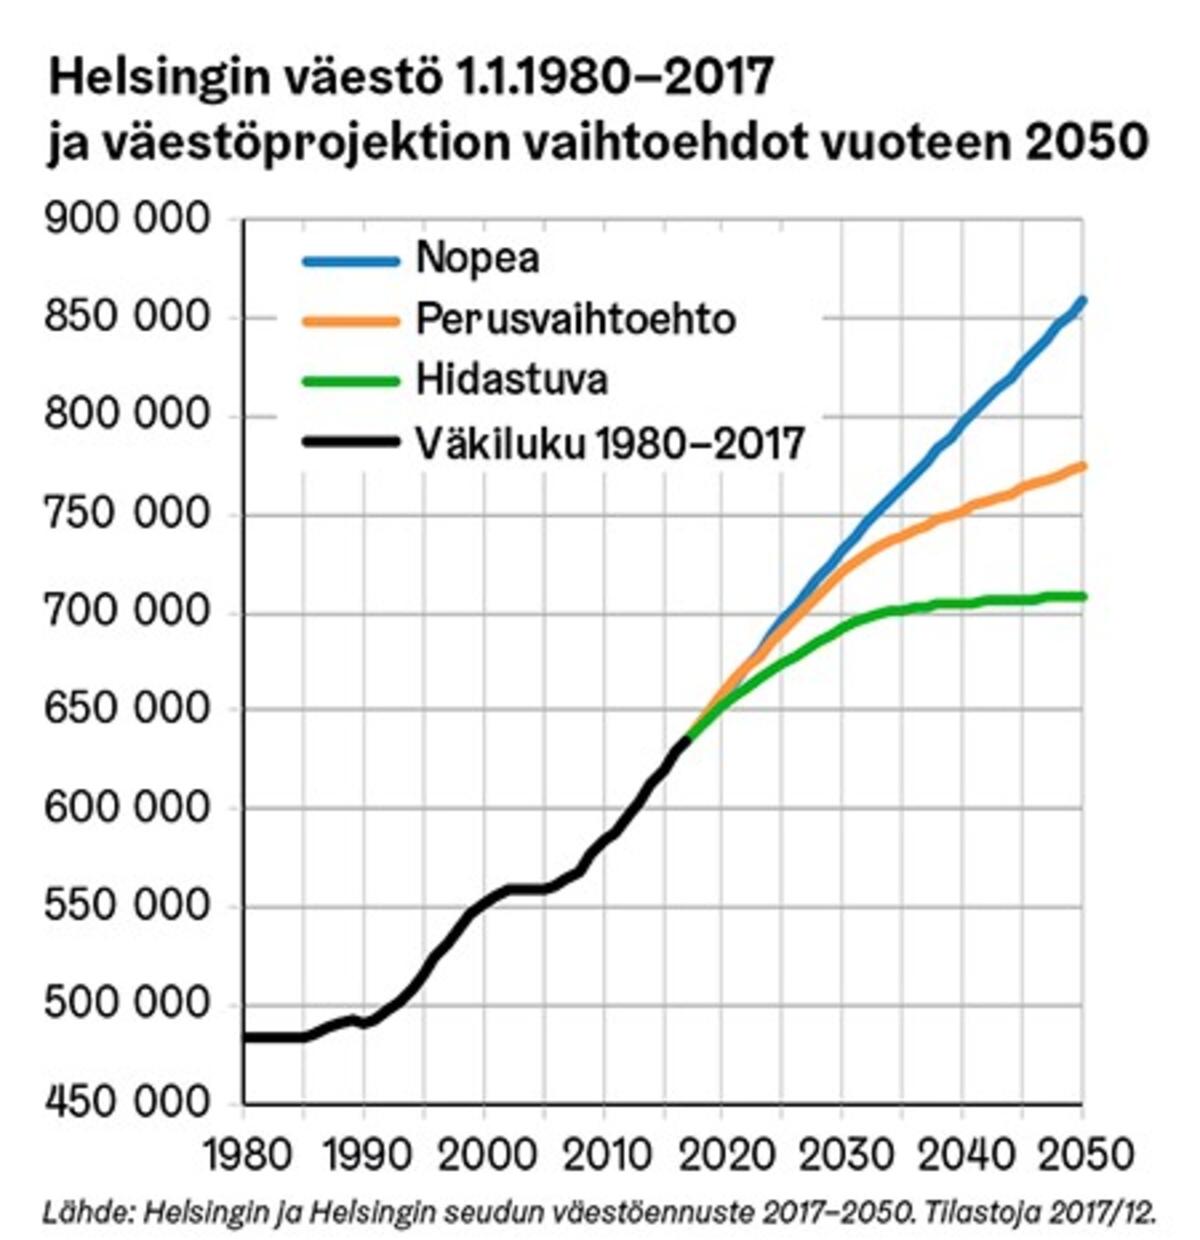 Diagrammet visar ökningen av Helsingforas invånarantal åren 1980–2017 samt tre alternativa befolkningsprognoser fram till året 2050.